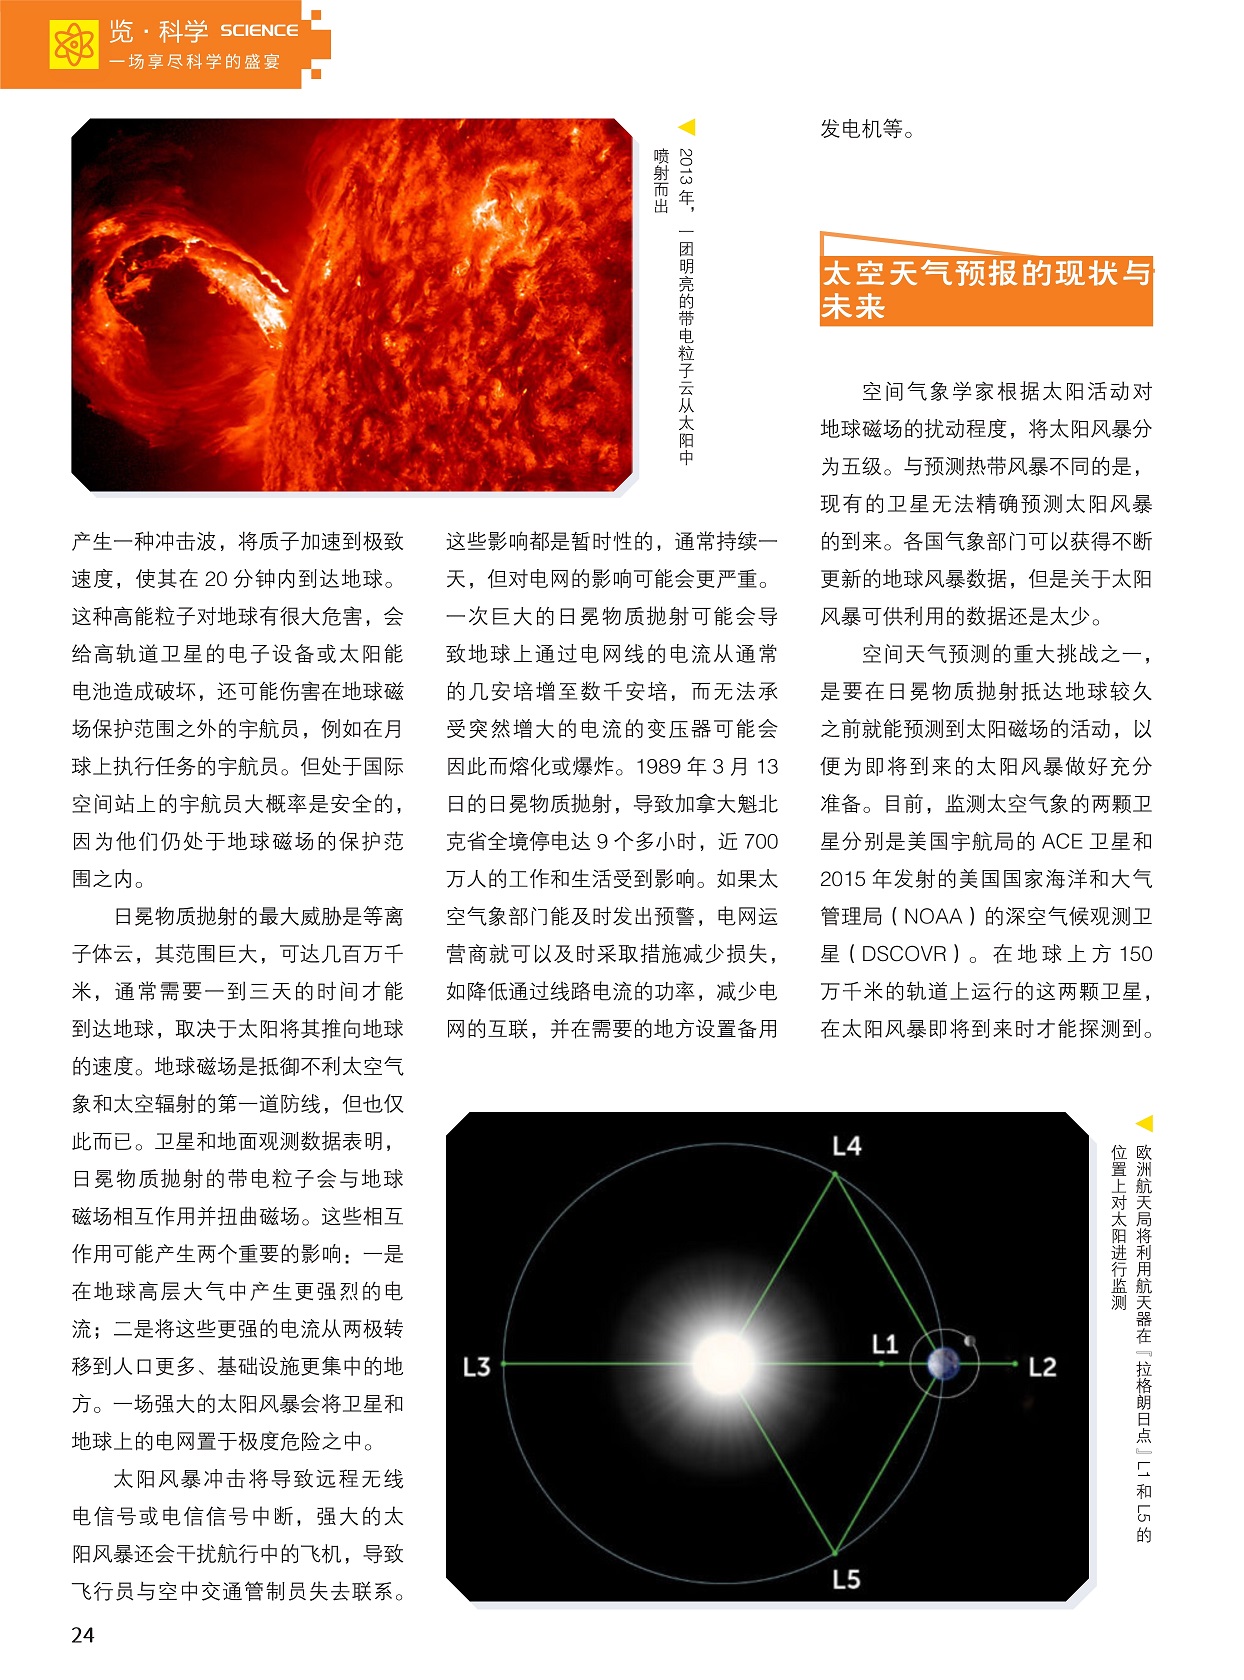 日冕物质抛射的最大威胁,太空天气预报的现状与未来